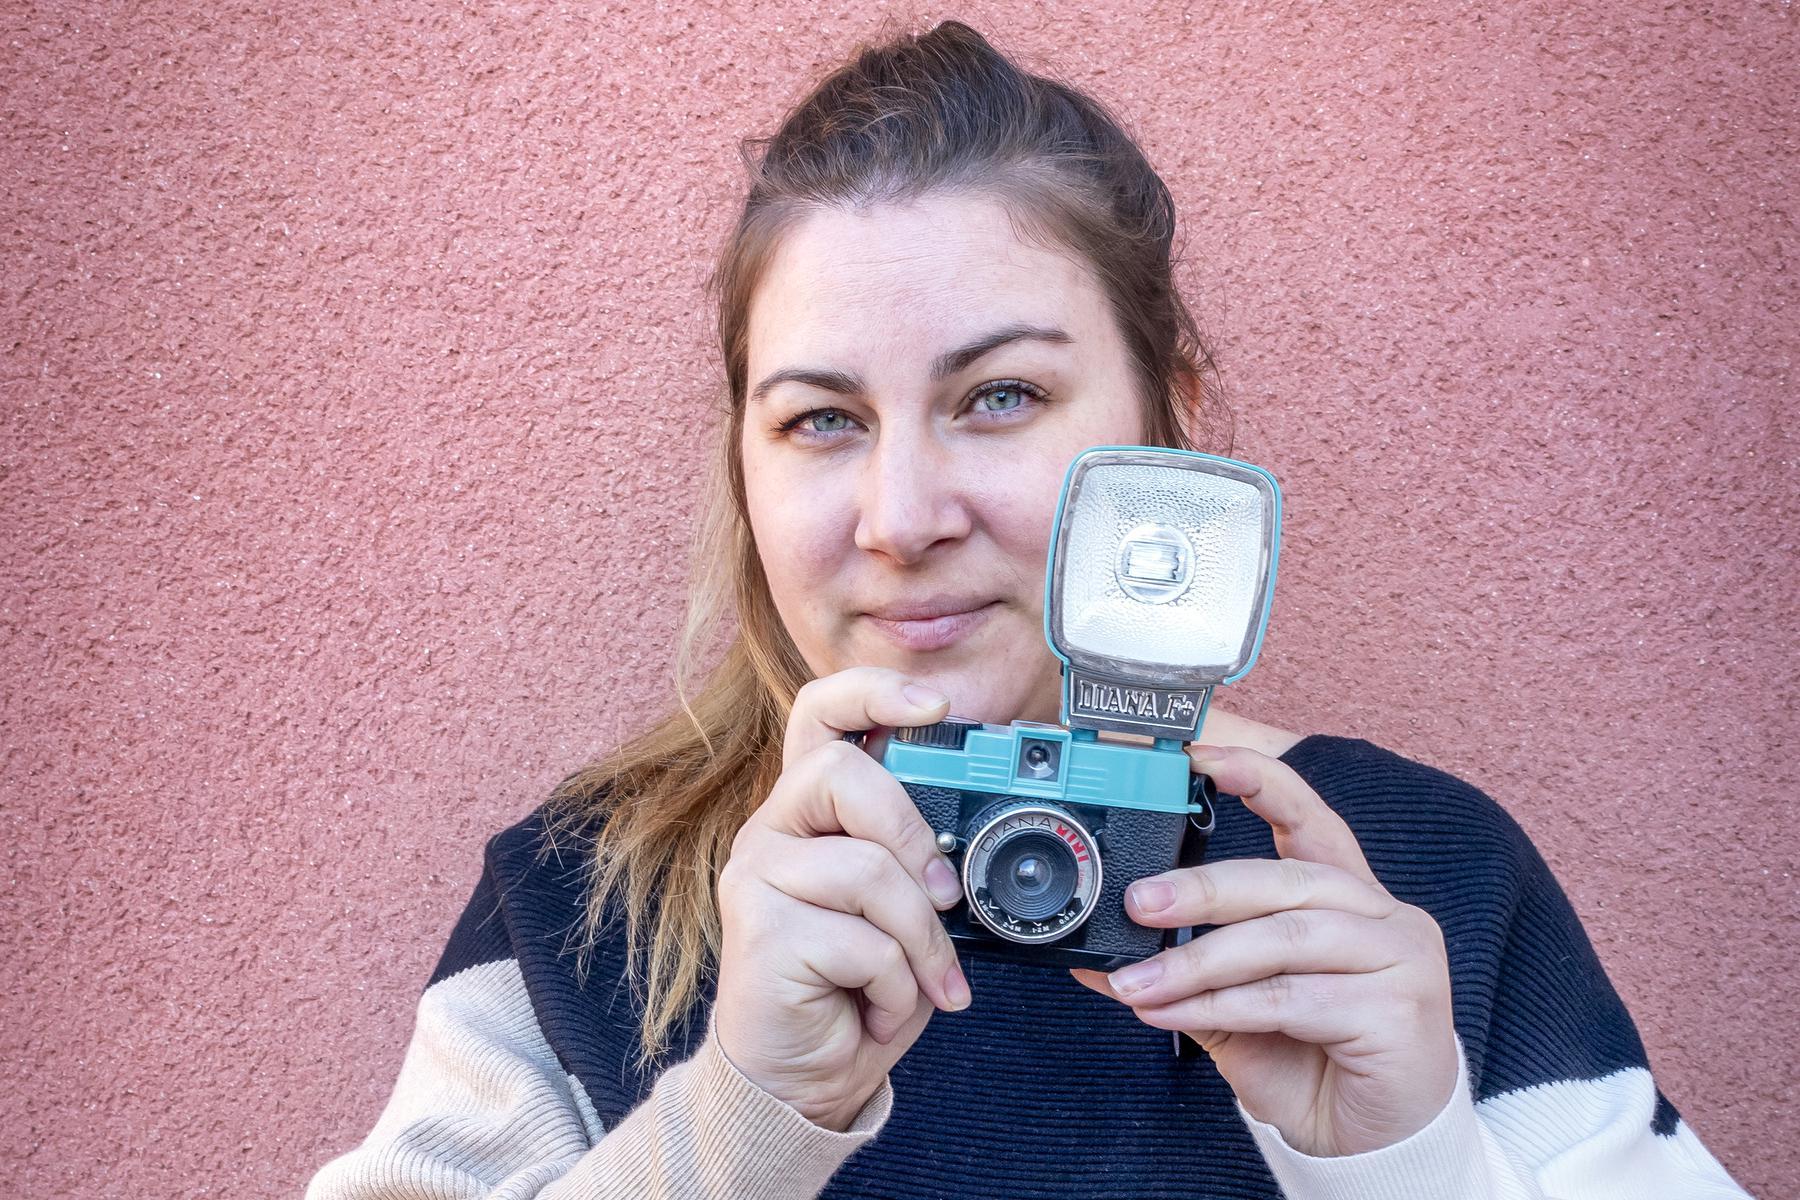 Vaidi, 34 anni, riunisce le colleghe con endometriosi e regala loro una sessione fotografica gratuita: “I tabù vanno sradicati”